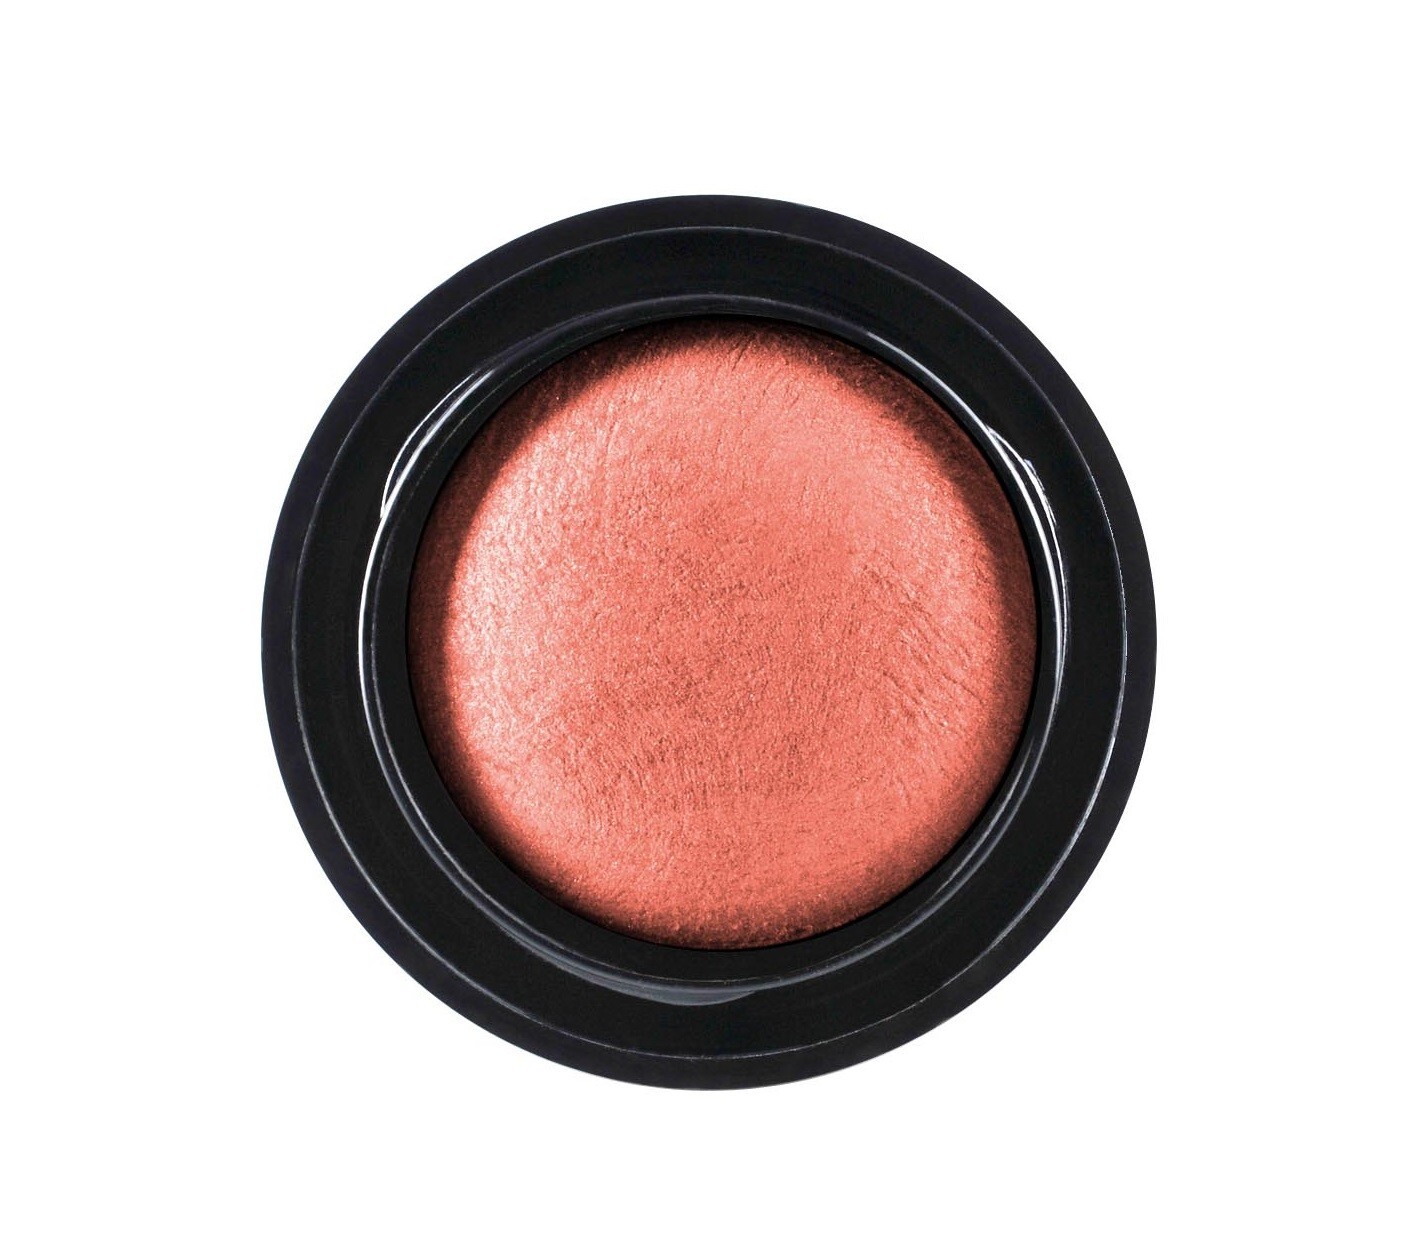 Make-up Studio Blusher Lumi Ãre Refill Soft Peach 1